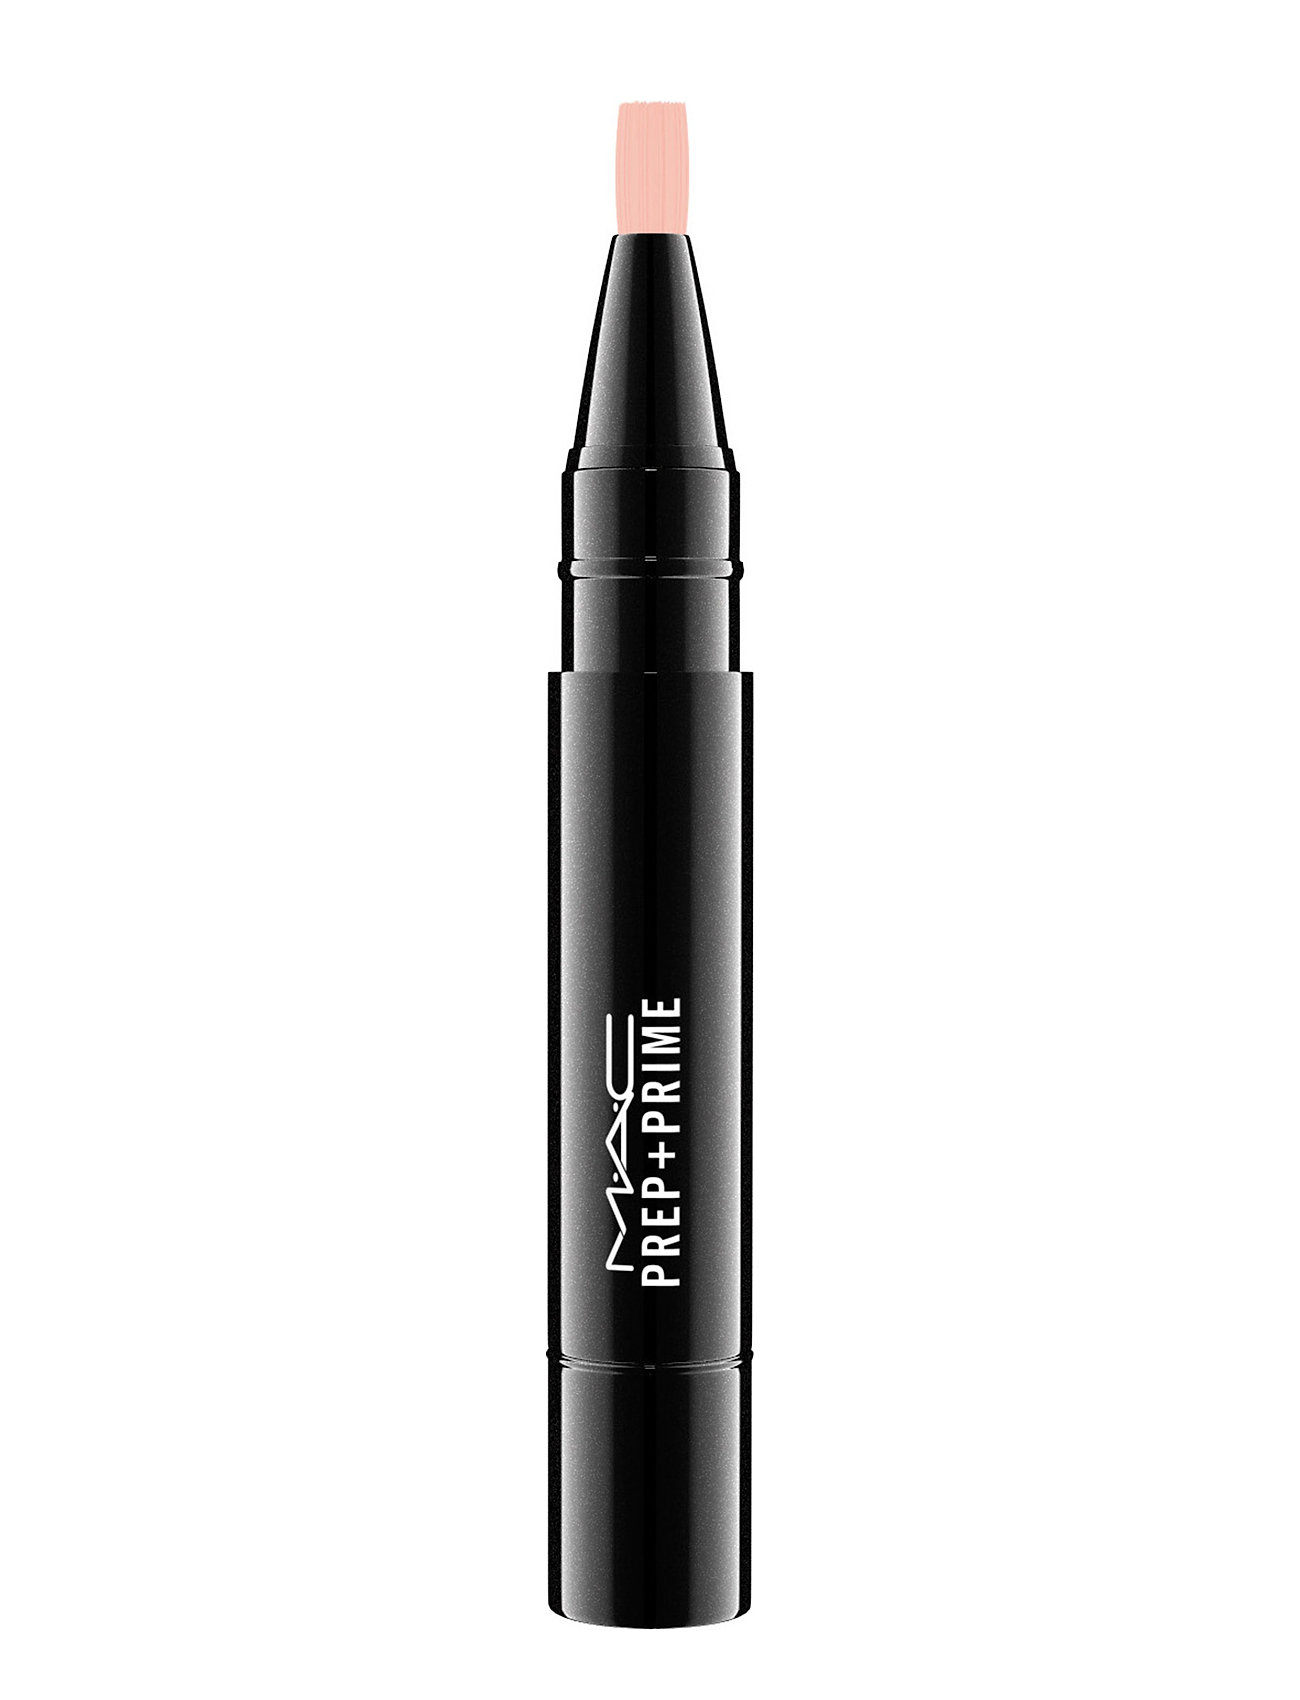 Prep + Prime Highlighter - Radiant Rose Highlighter Contour Makeup Multi/patterned MAC